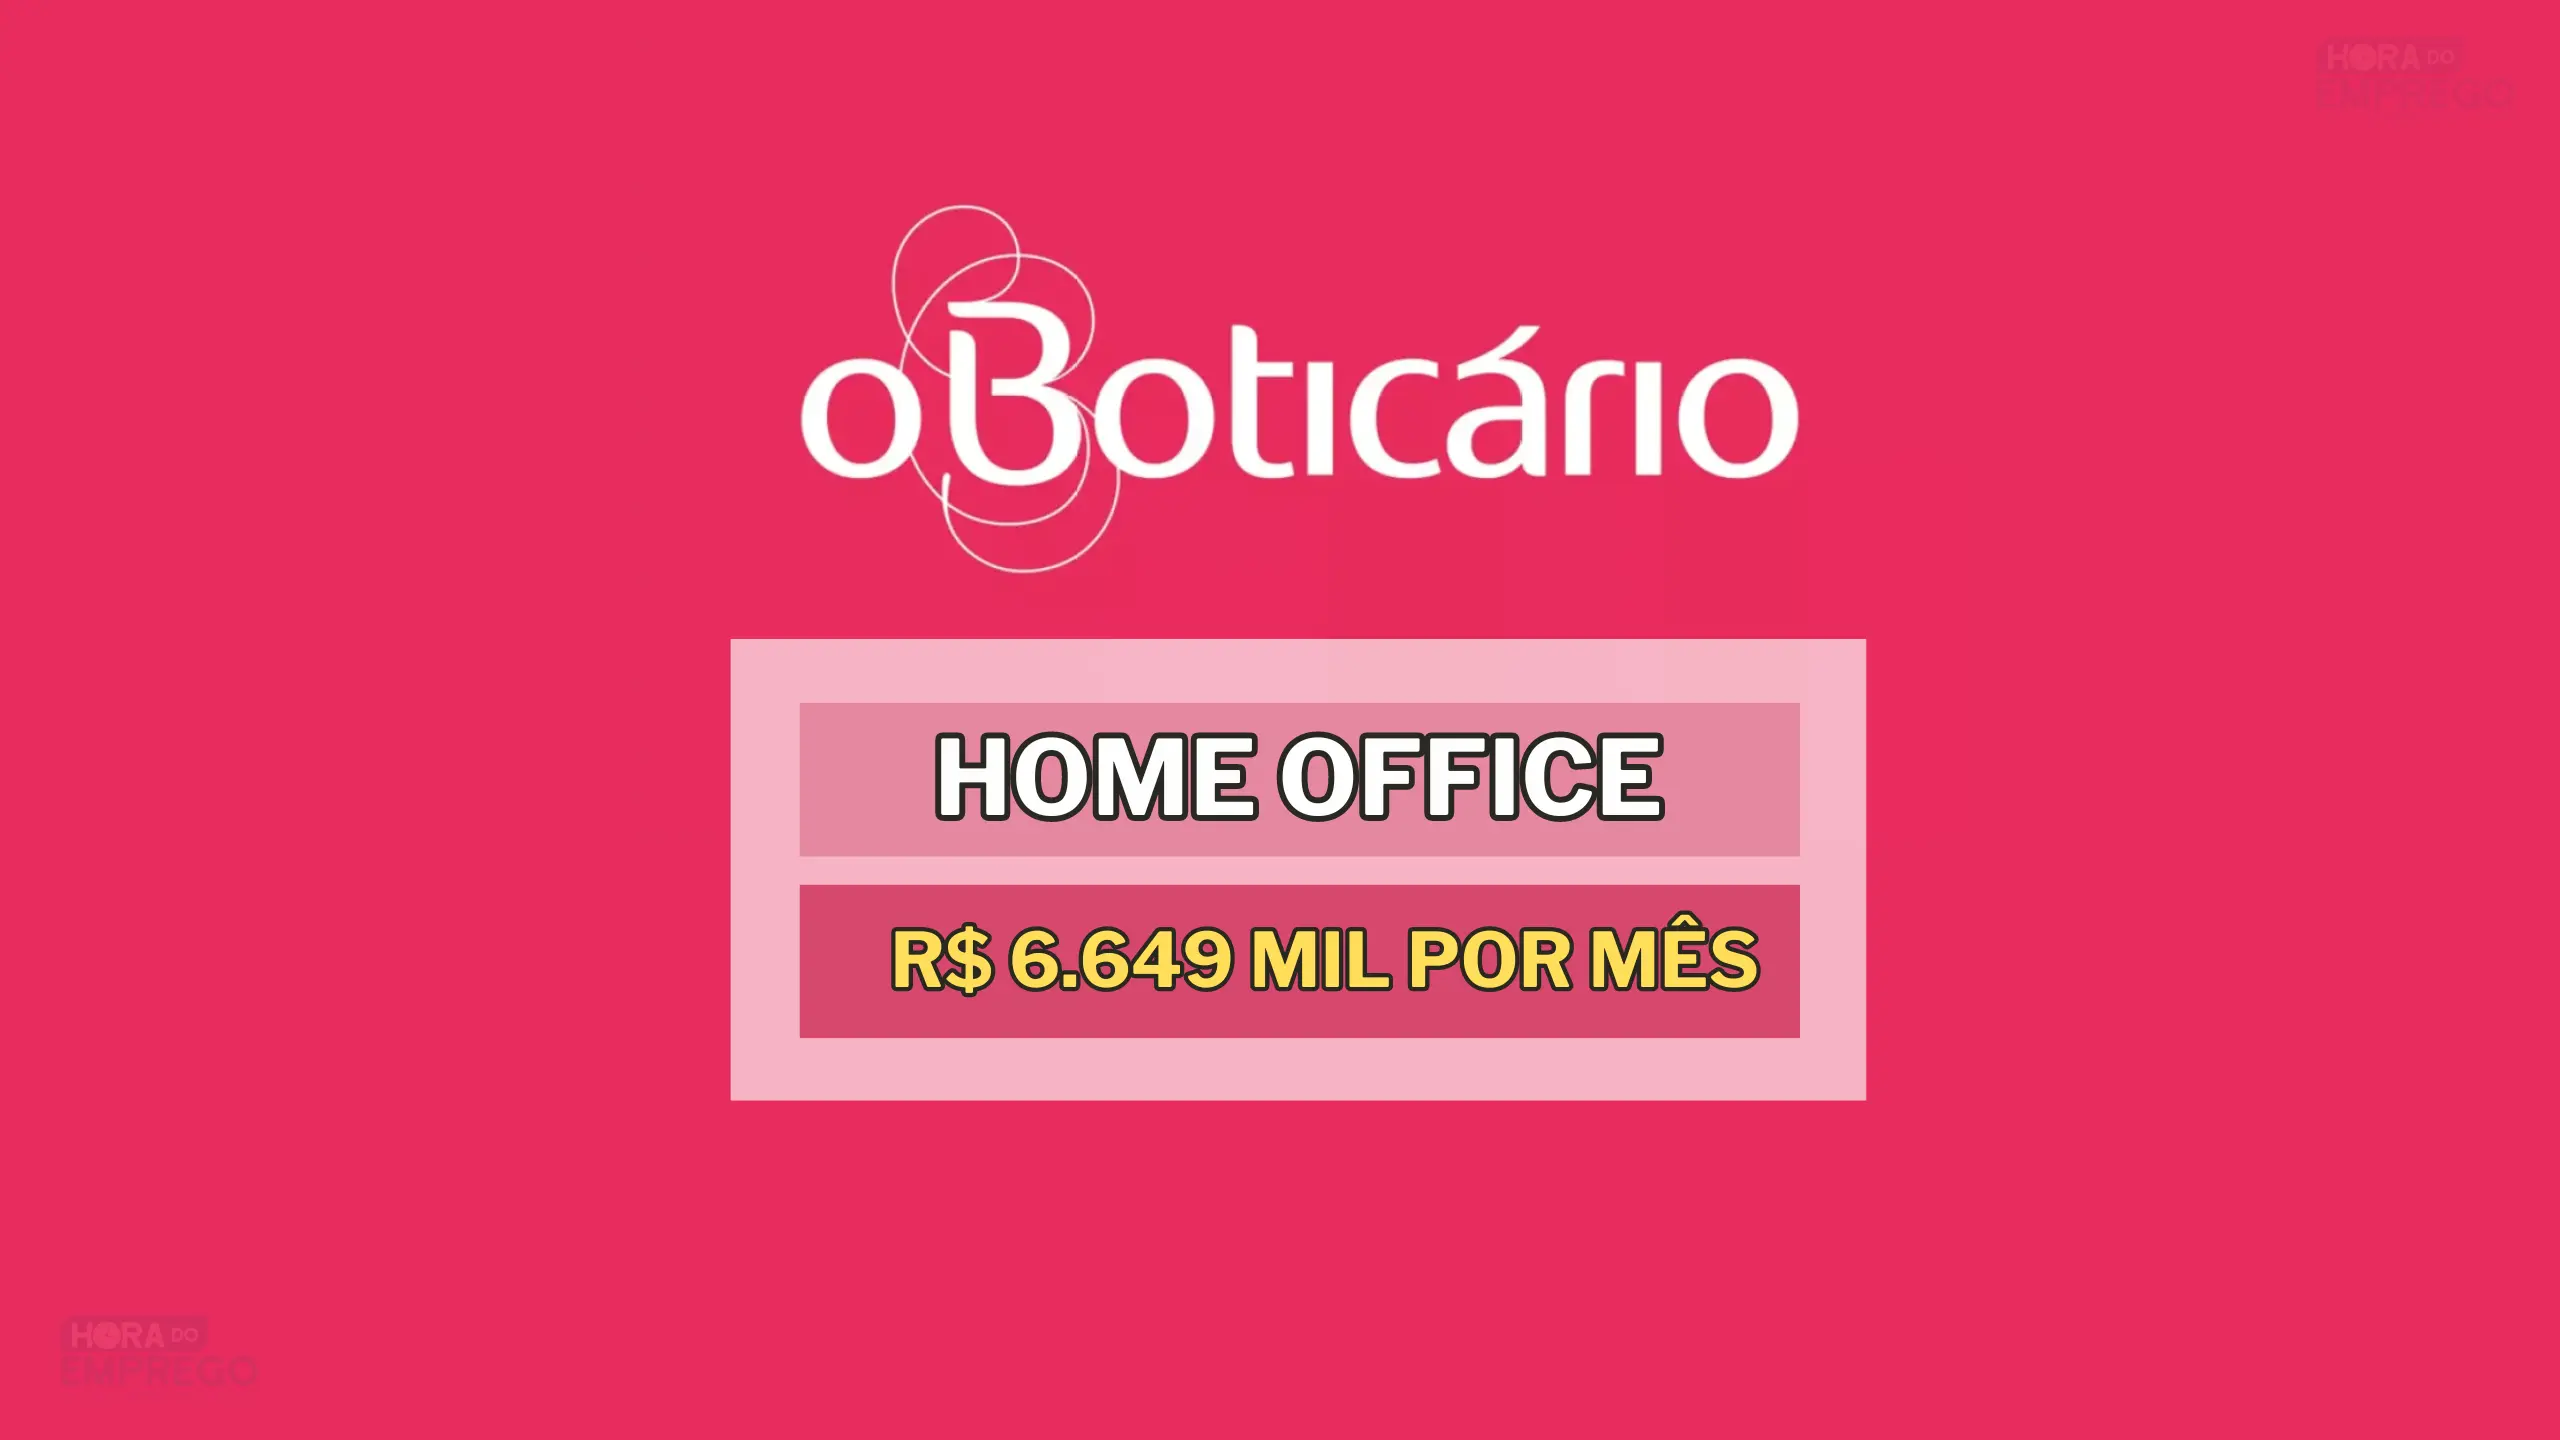 Grupo O Boticário abiu vaga HOME OFFICE com média Salarial de R$ 6.649 MIL por mês no Setor de Marketing